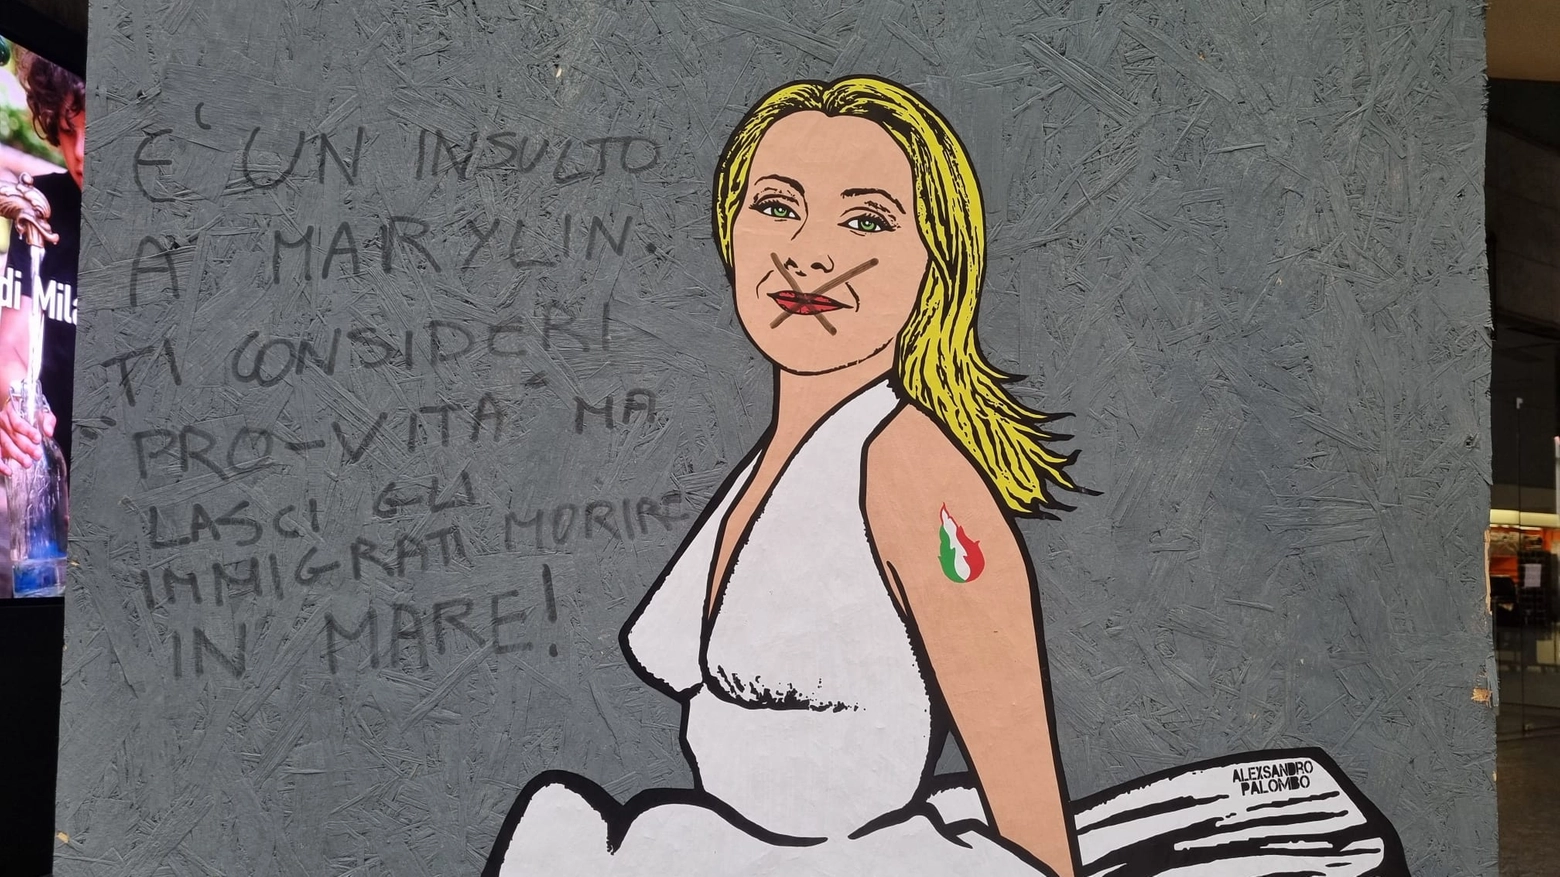 Milano, l’opera realizzata dall’artista milanese in corso Matteotti è stata vandalizzata nella notte